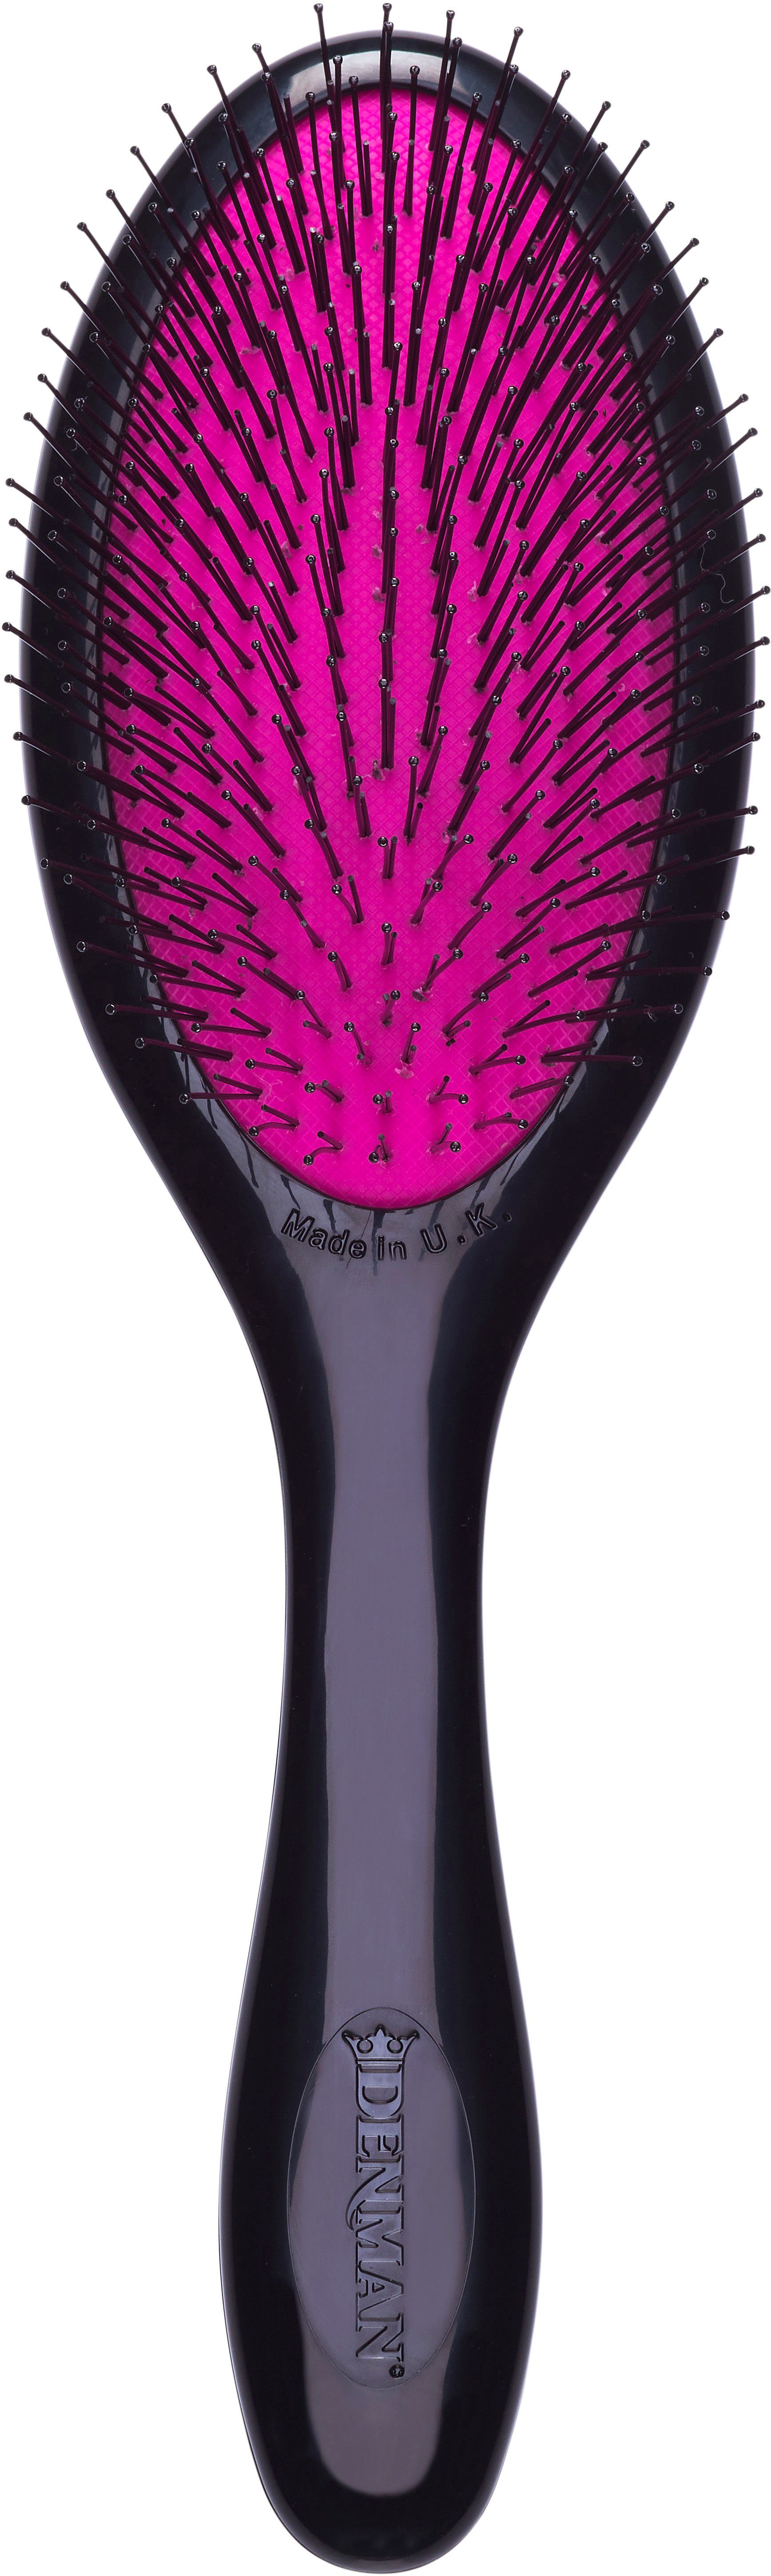 für schwarz-pink Kinderhaar feines Tangle Tamer DENMAN D93M Entwirrungsbürste Haar Haarbürste Gentle, und speziell